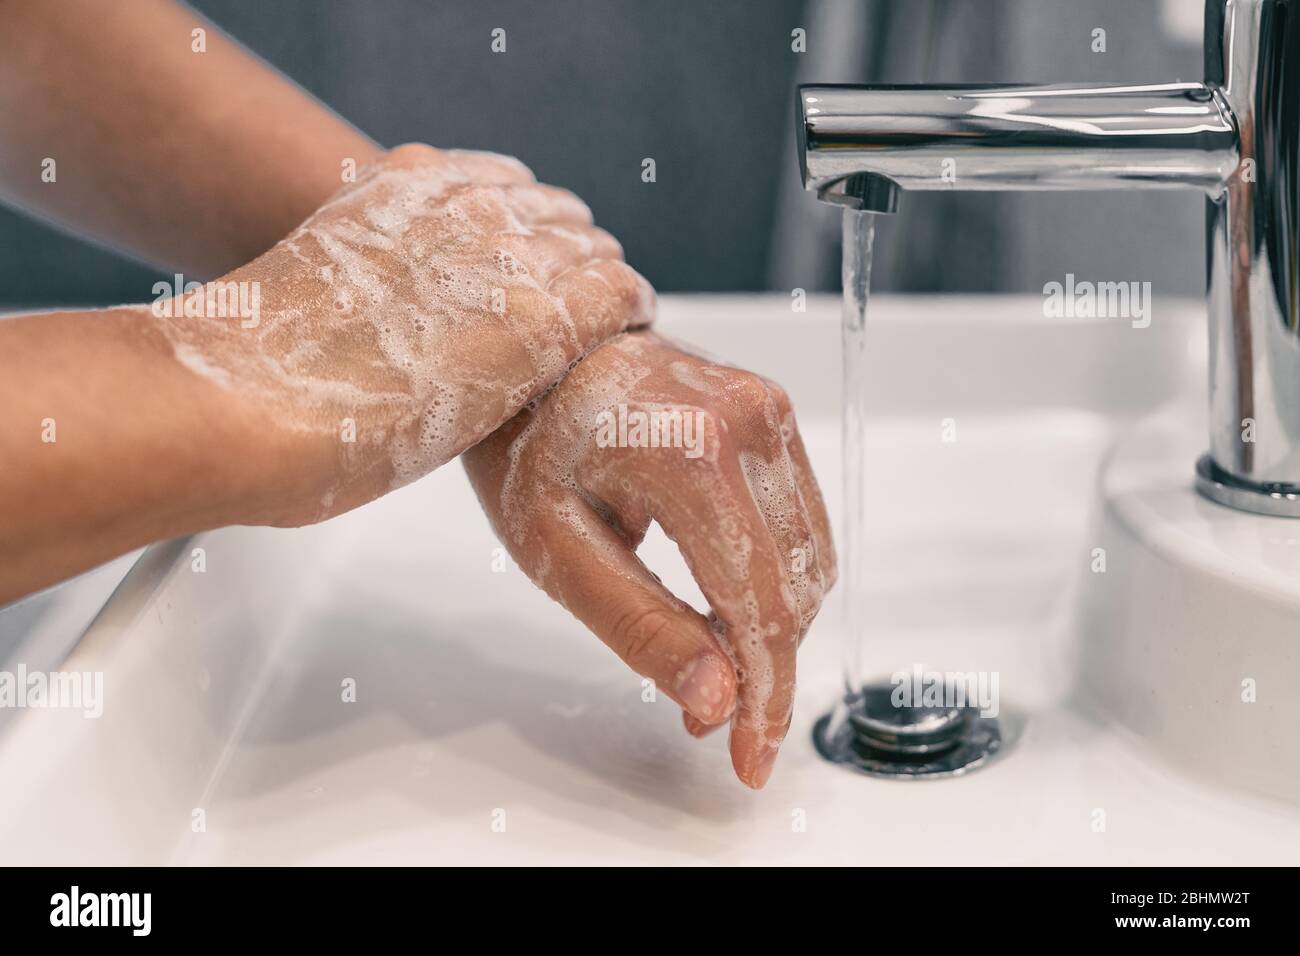 Lavage des mains hygiène personnelle femme lavage des mains savon à frotter pendant 20 secondes suivant les étapes, nettoyage des poignets et rinçage sous l'eau dans la salle de bains à la maison. COVID-19 prévention des infections lavage des mains. Banque D'Images